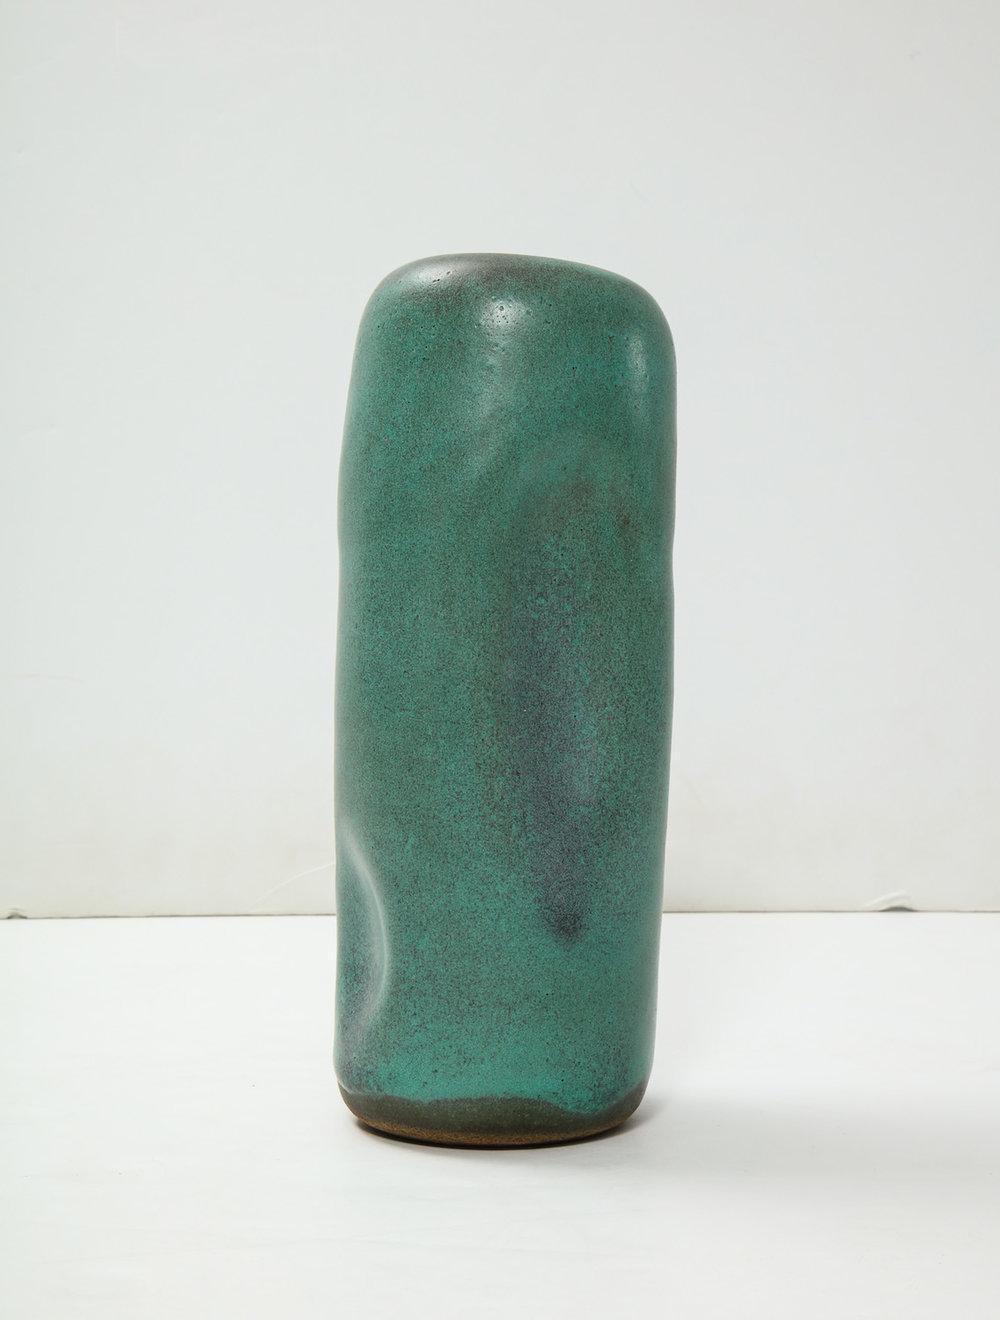 Zylindrische, angelehnte TOTEM-Form, handgefertigt mit Einkerbungen, grün glasiert. Auf der Unterseite vom Künstler signiert.